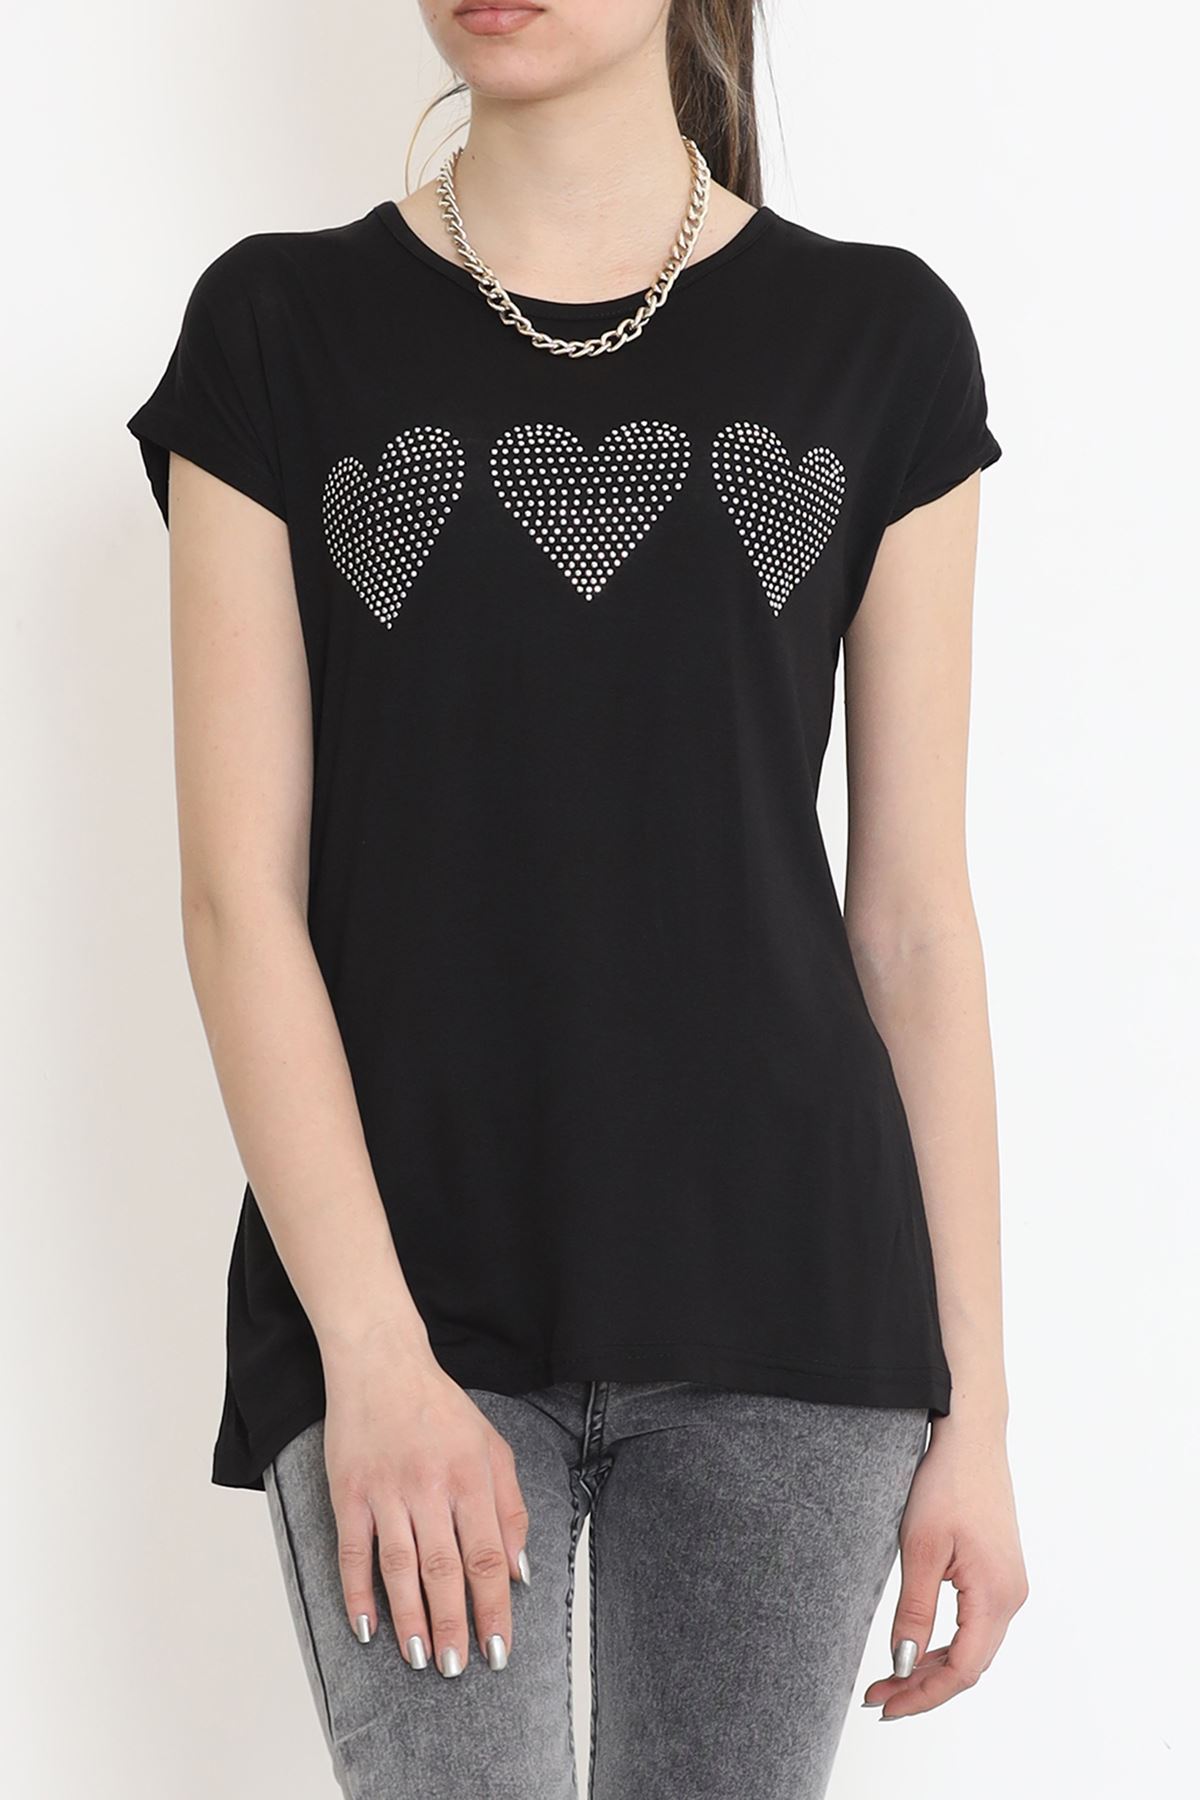 Kalp İşlemeli Bluz Siyah - 17128.599.